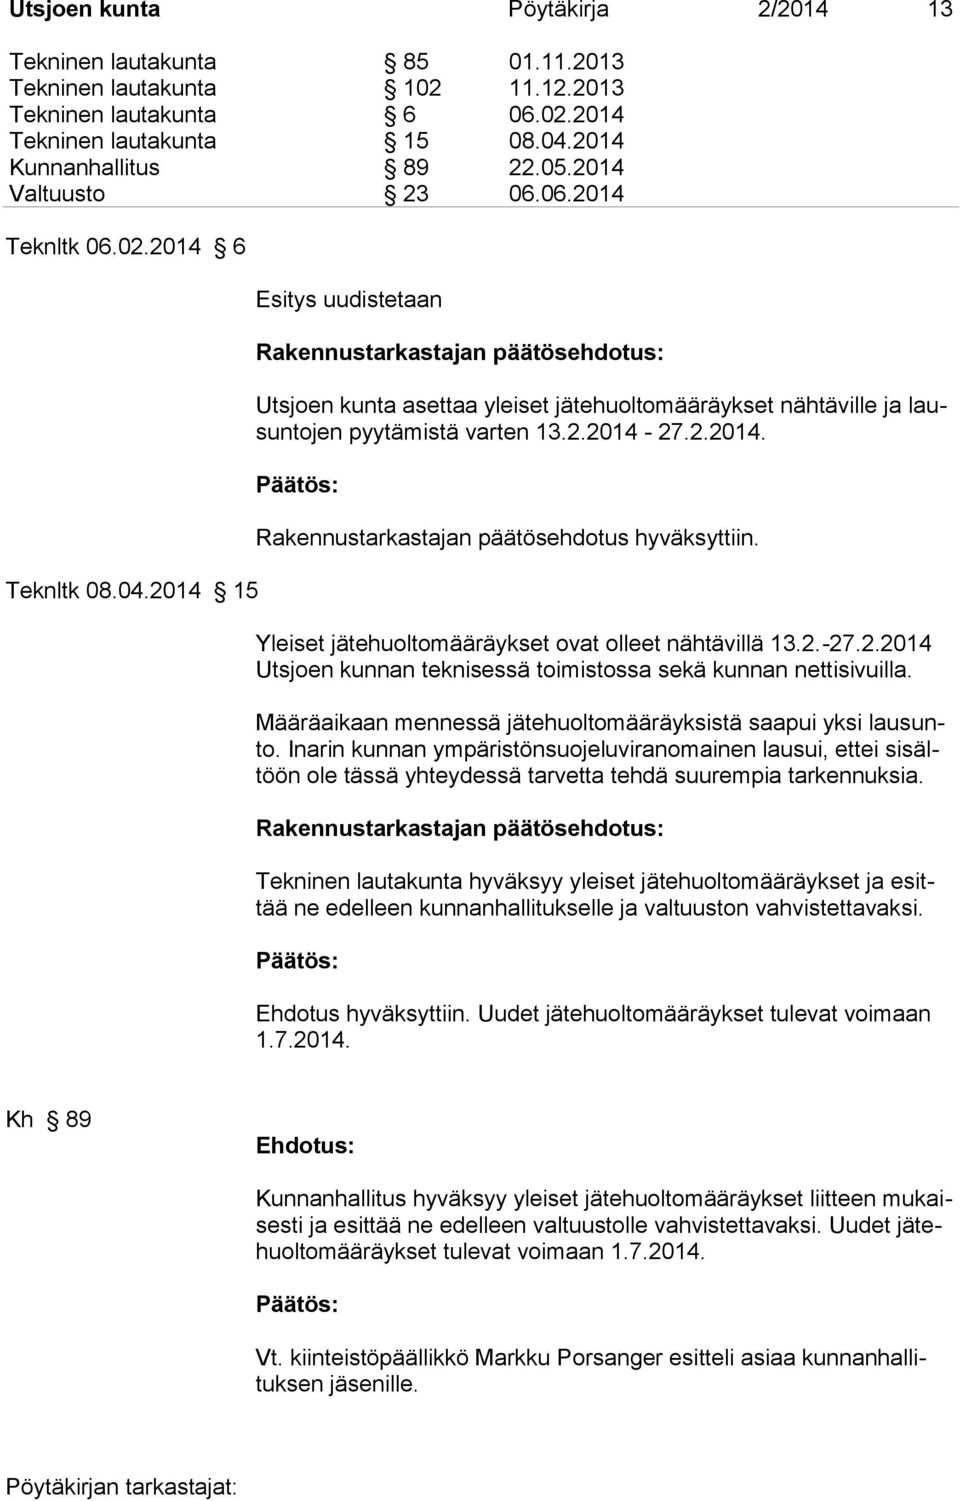 2014 15 Esitys uudistetaan Rakennustarkastajan päätösehdotus: Utsjoen kunta asettaa yleiset jätehuoltomääräykset nähtäville ja lausuntojen pyytämistä varten 13.2.2014-27.2.2014. Rakennustarkastajan päätösehdotus hyväksyttiin.